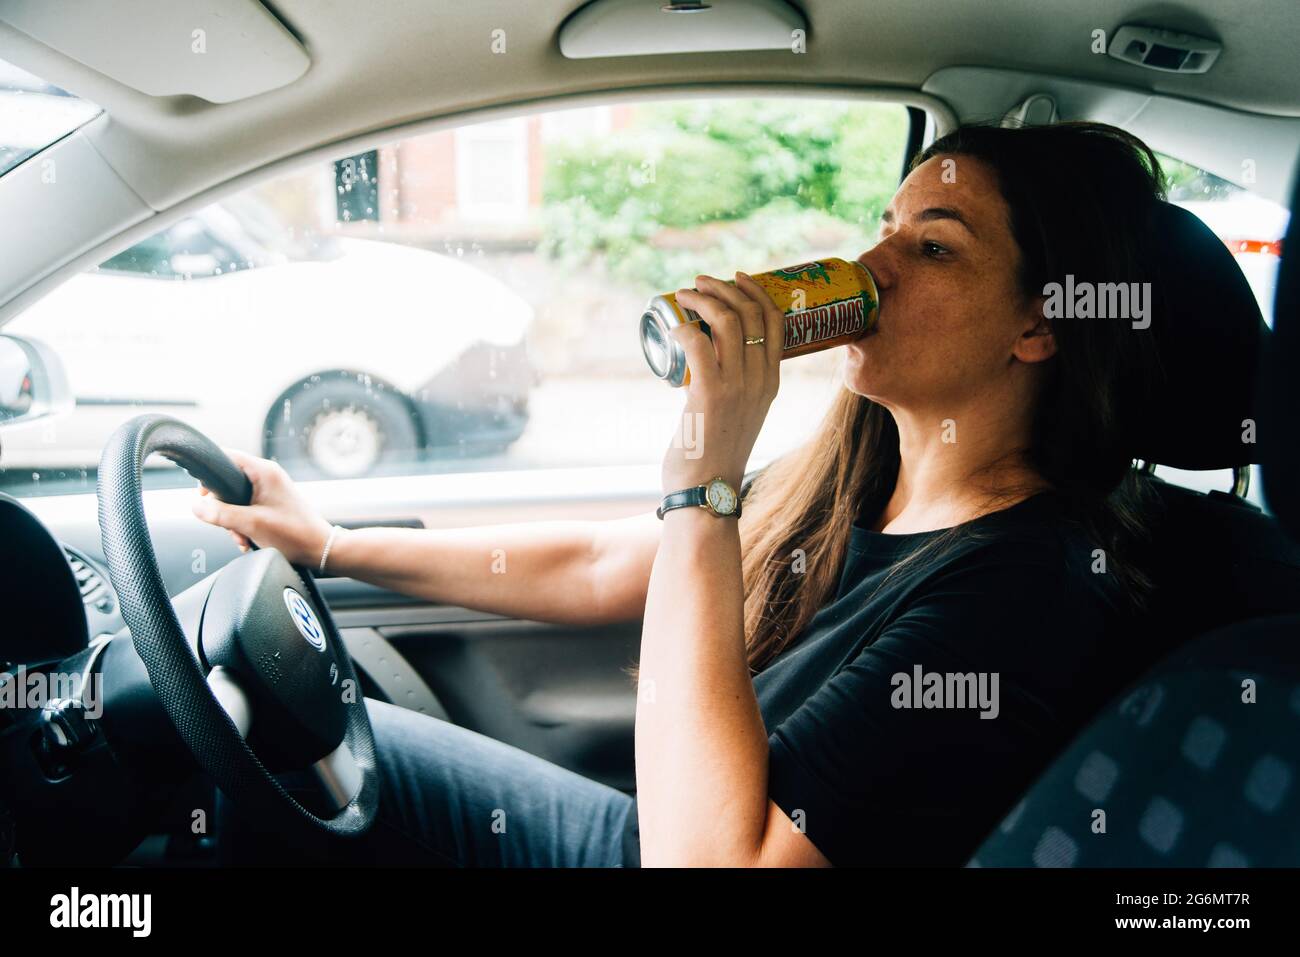 Eine Frau in den dreißiger Jahren trinkt aus einer Dose Bier, während sie mit dem Auto fährt Stockfoto